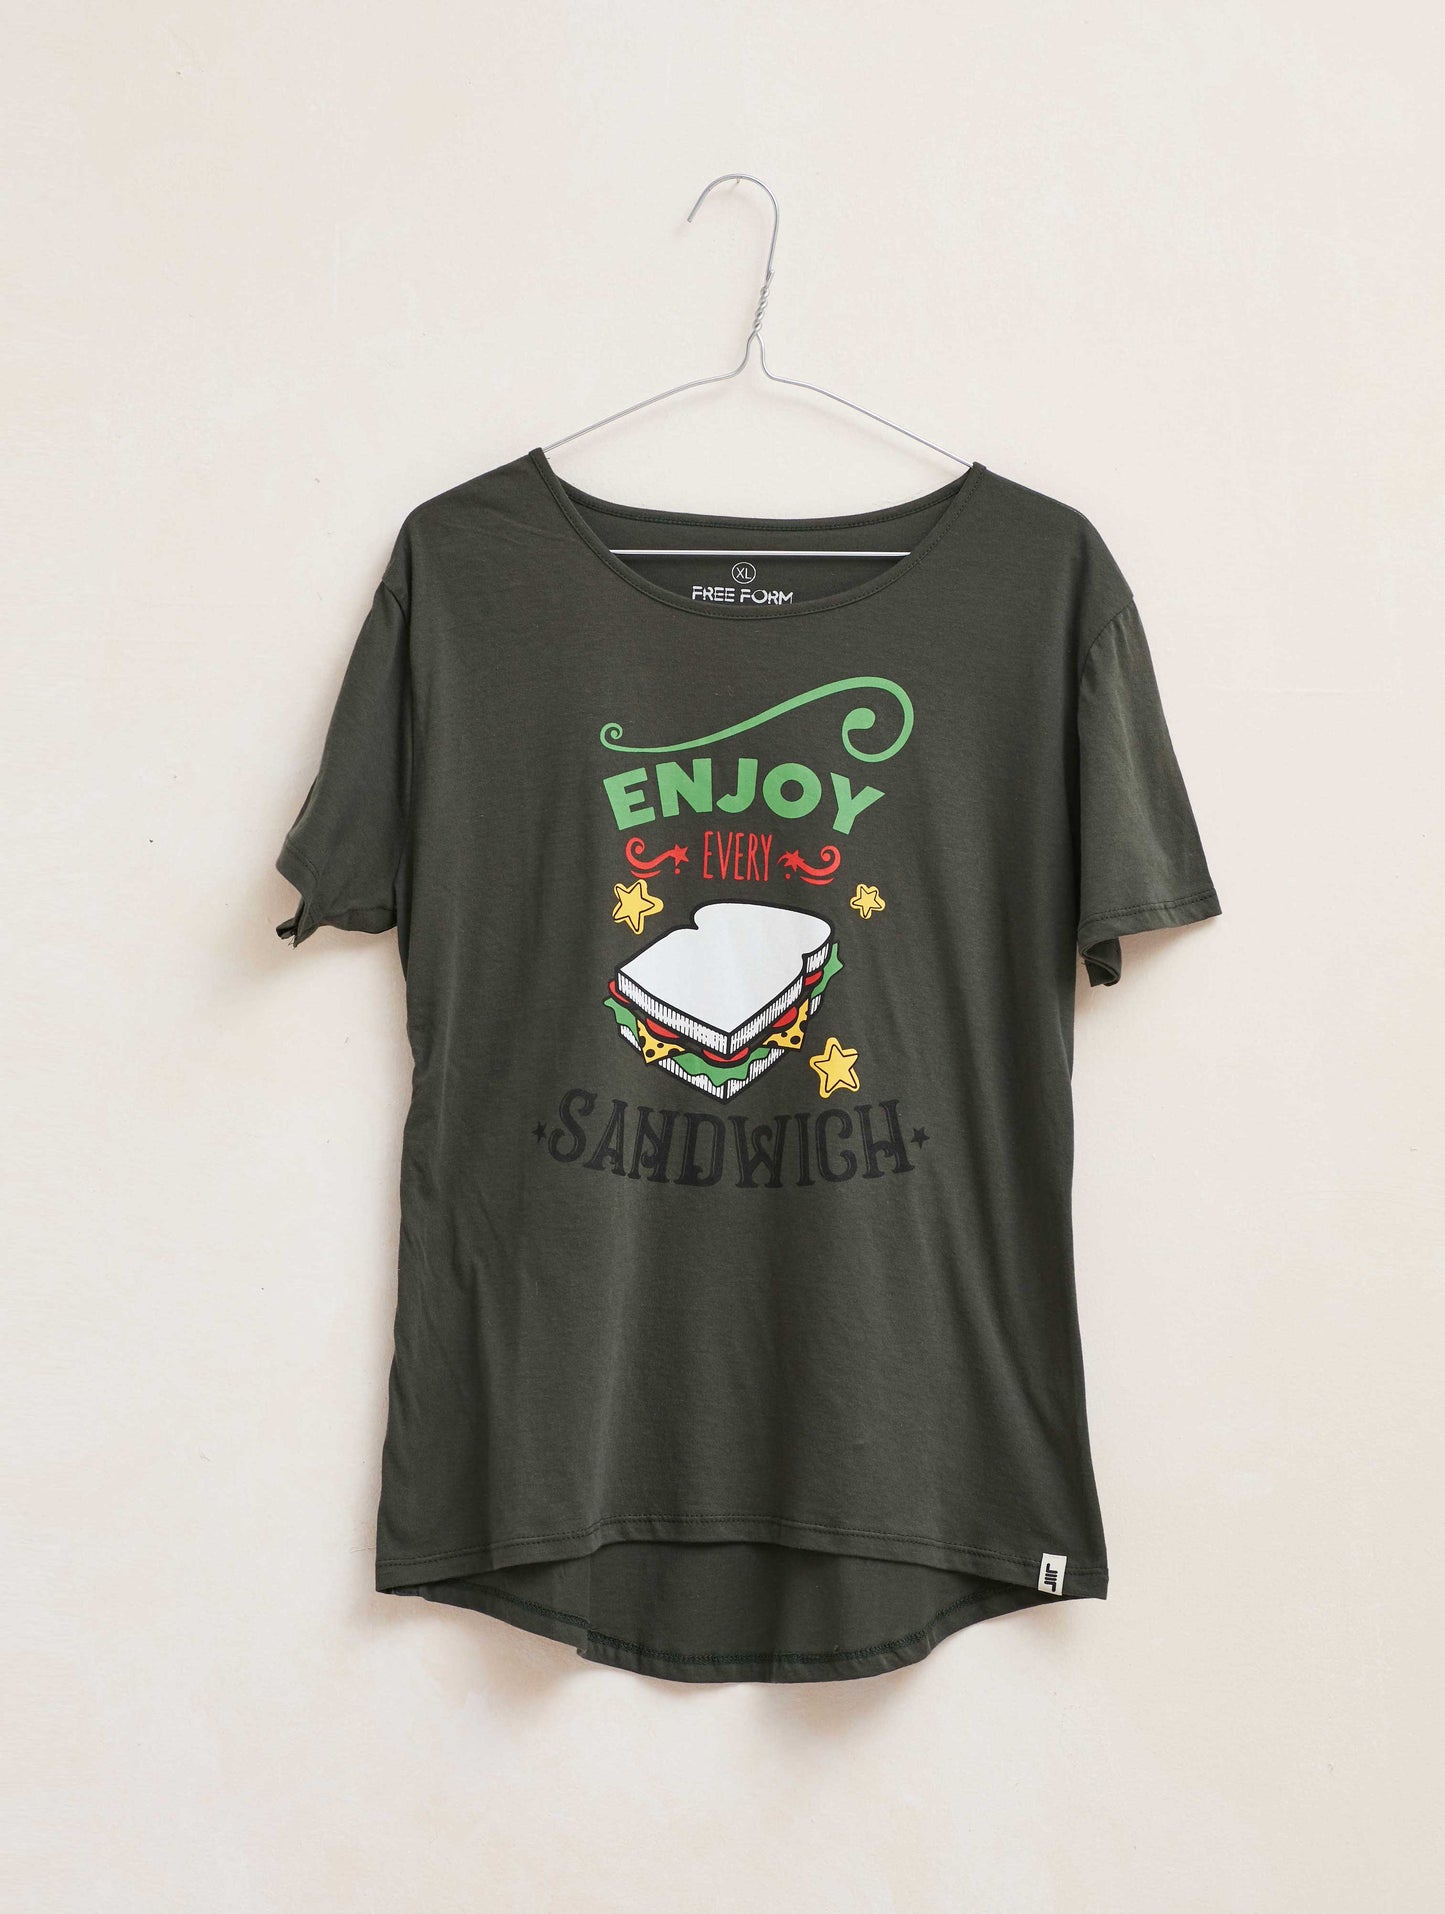 Camiseta mujer manga corta "SANDWICH" verde